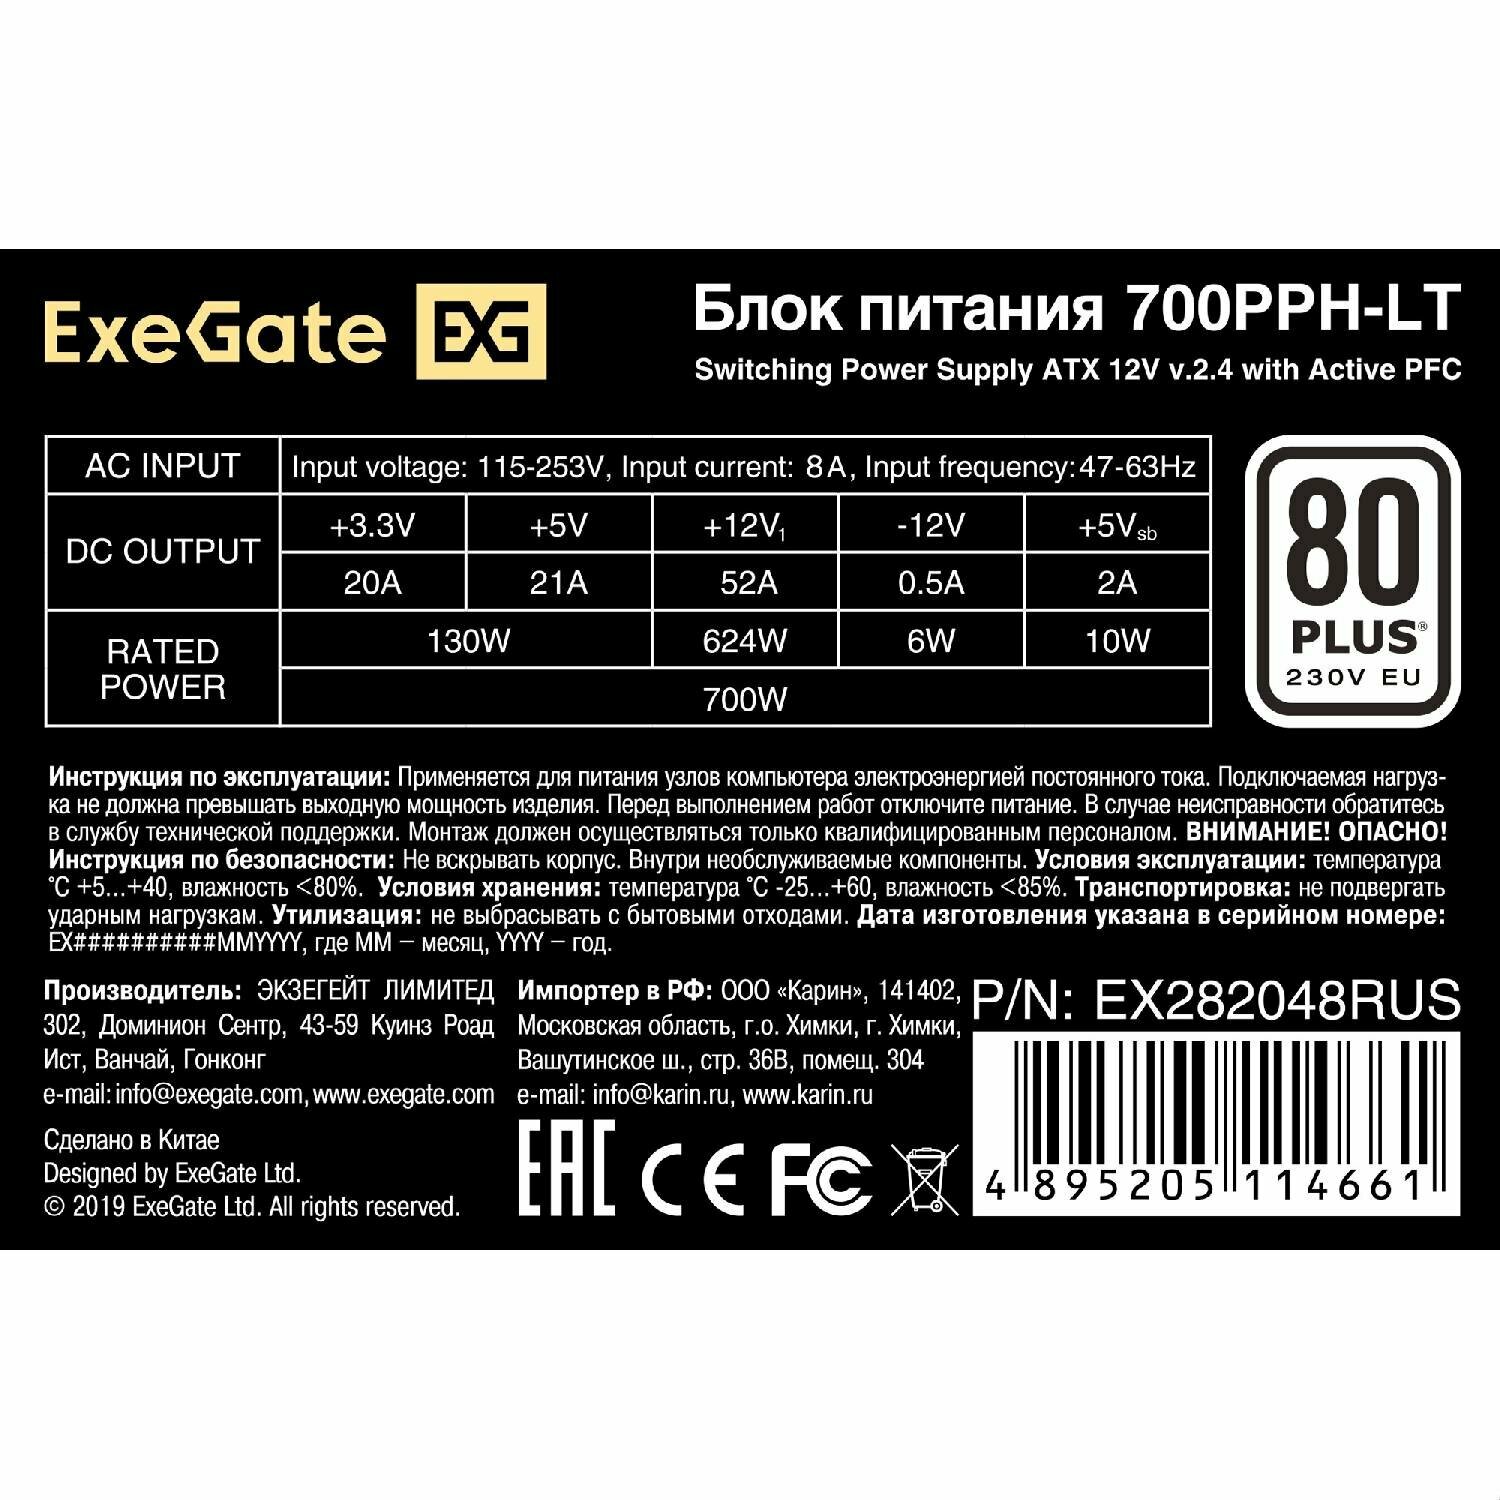 Блок питания ATX 700 Вт Exegate 700PPH-LT EX282048RUS - фото №7